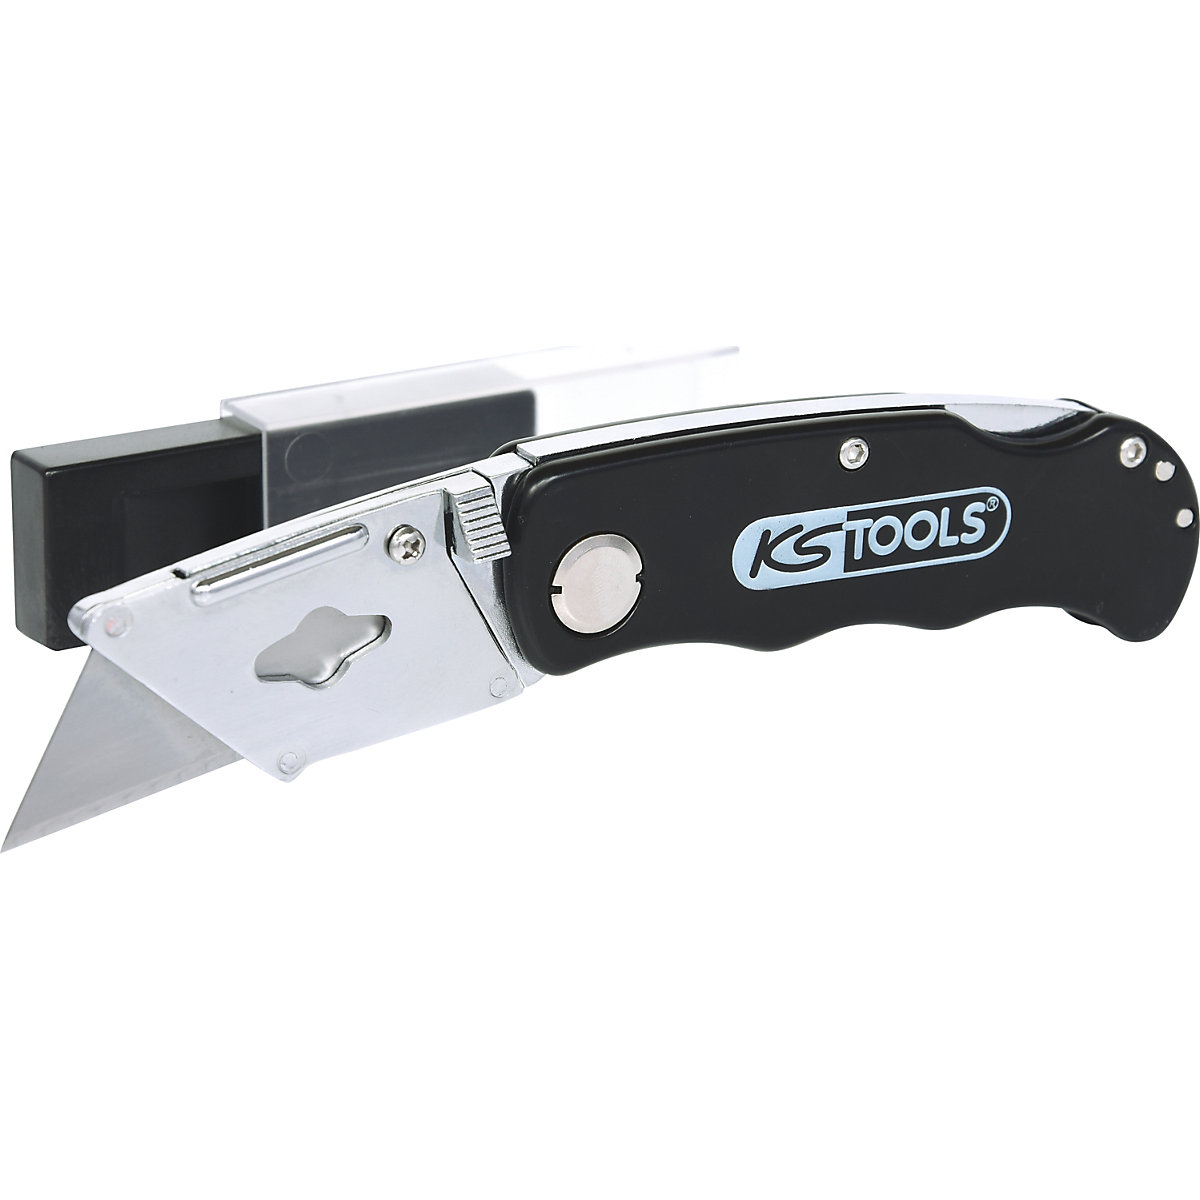 Folding knife – KS Tools